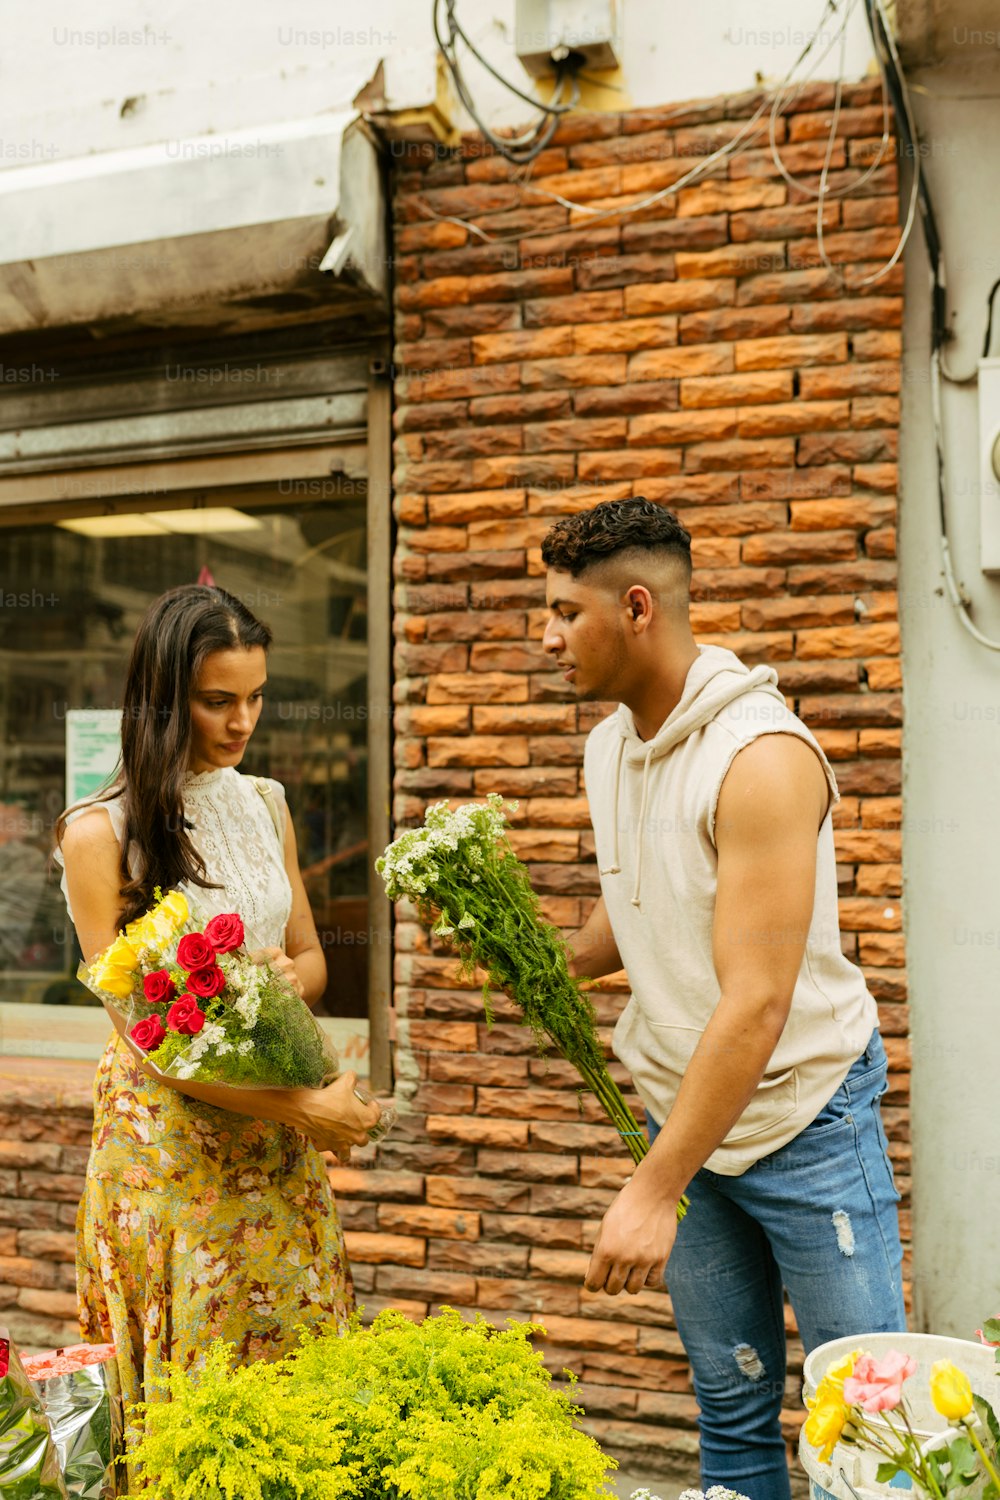 꽃집 앞에 서 있는 남자와 여자